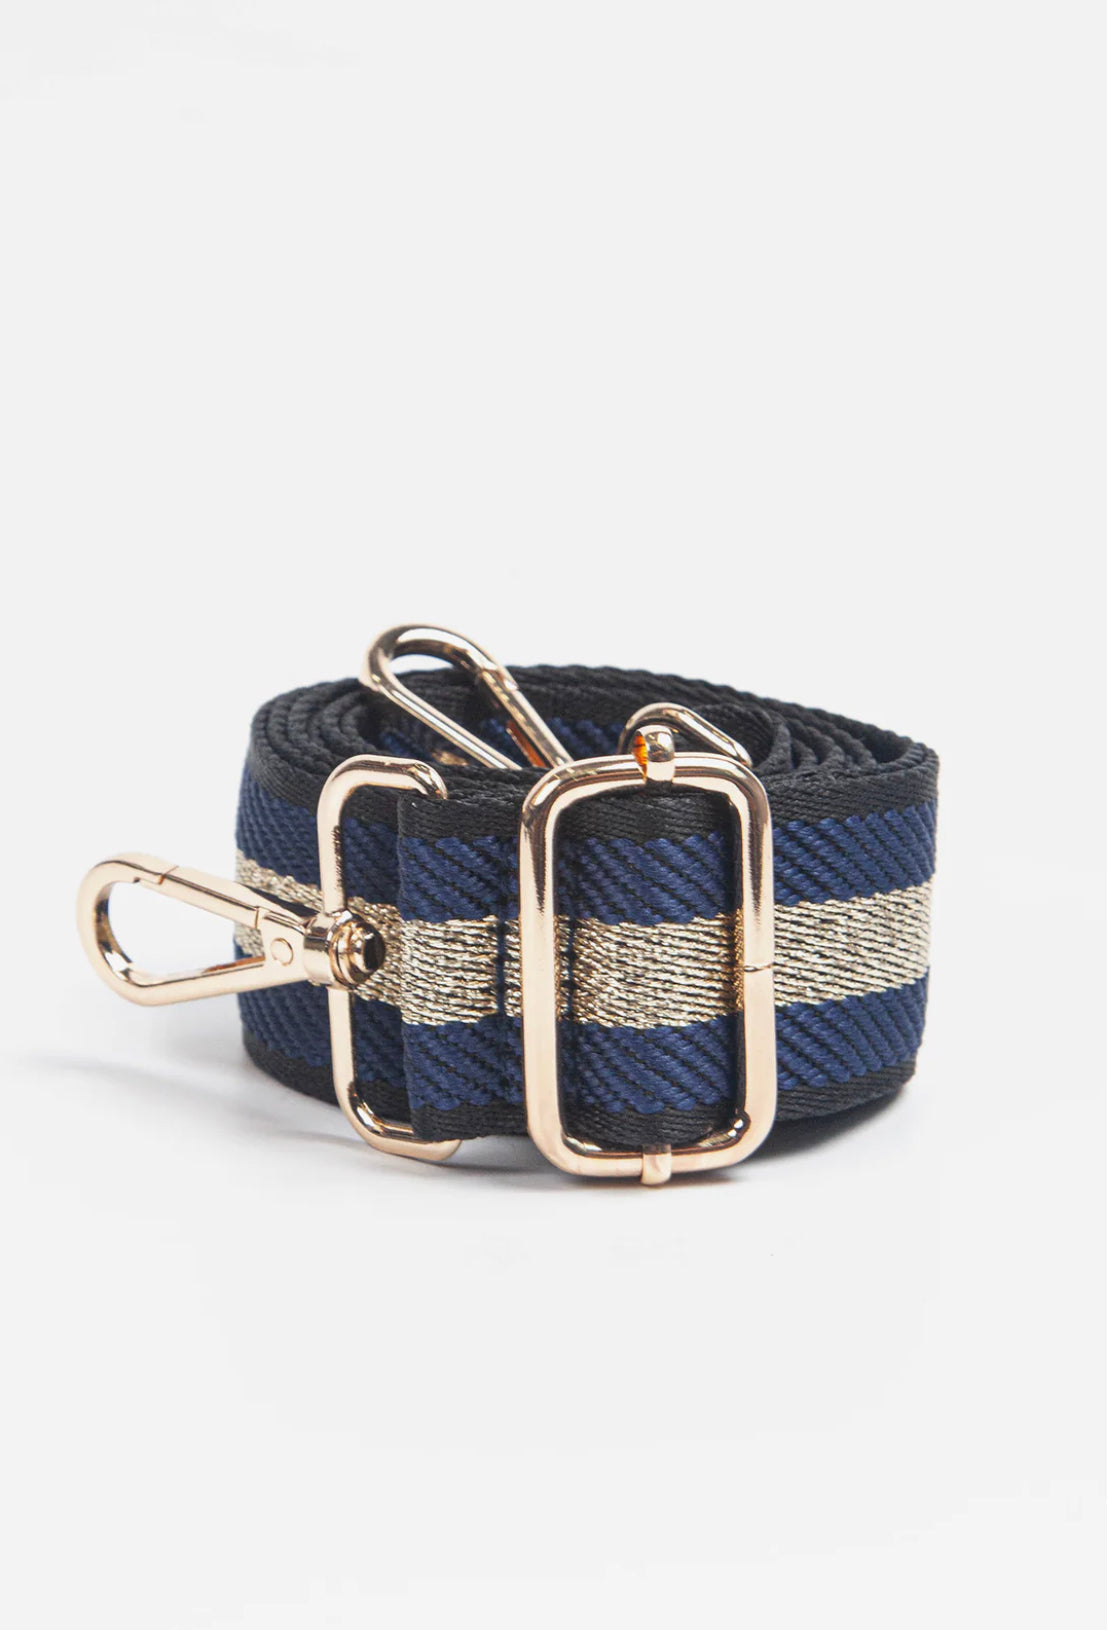 Stripe Bag Strap | Navy